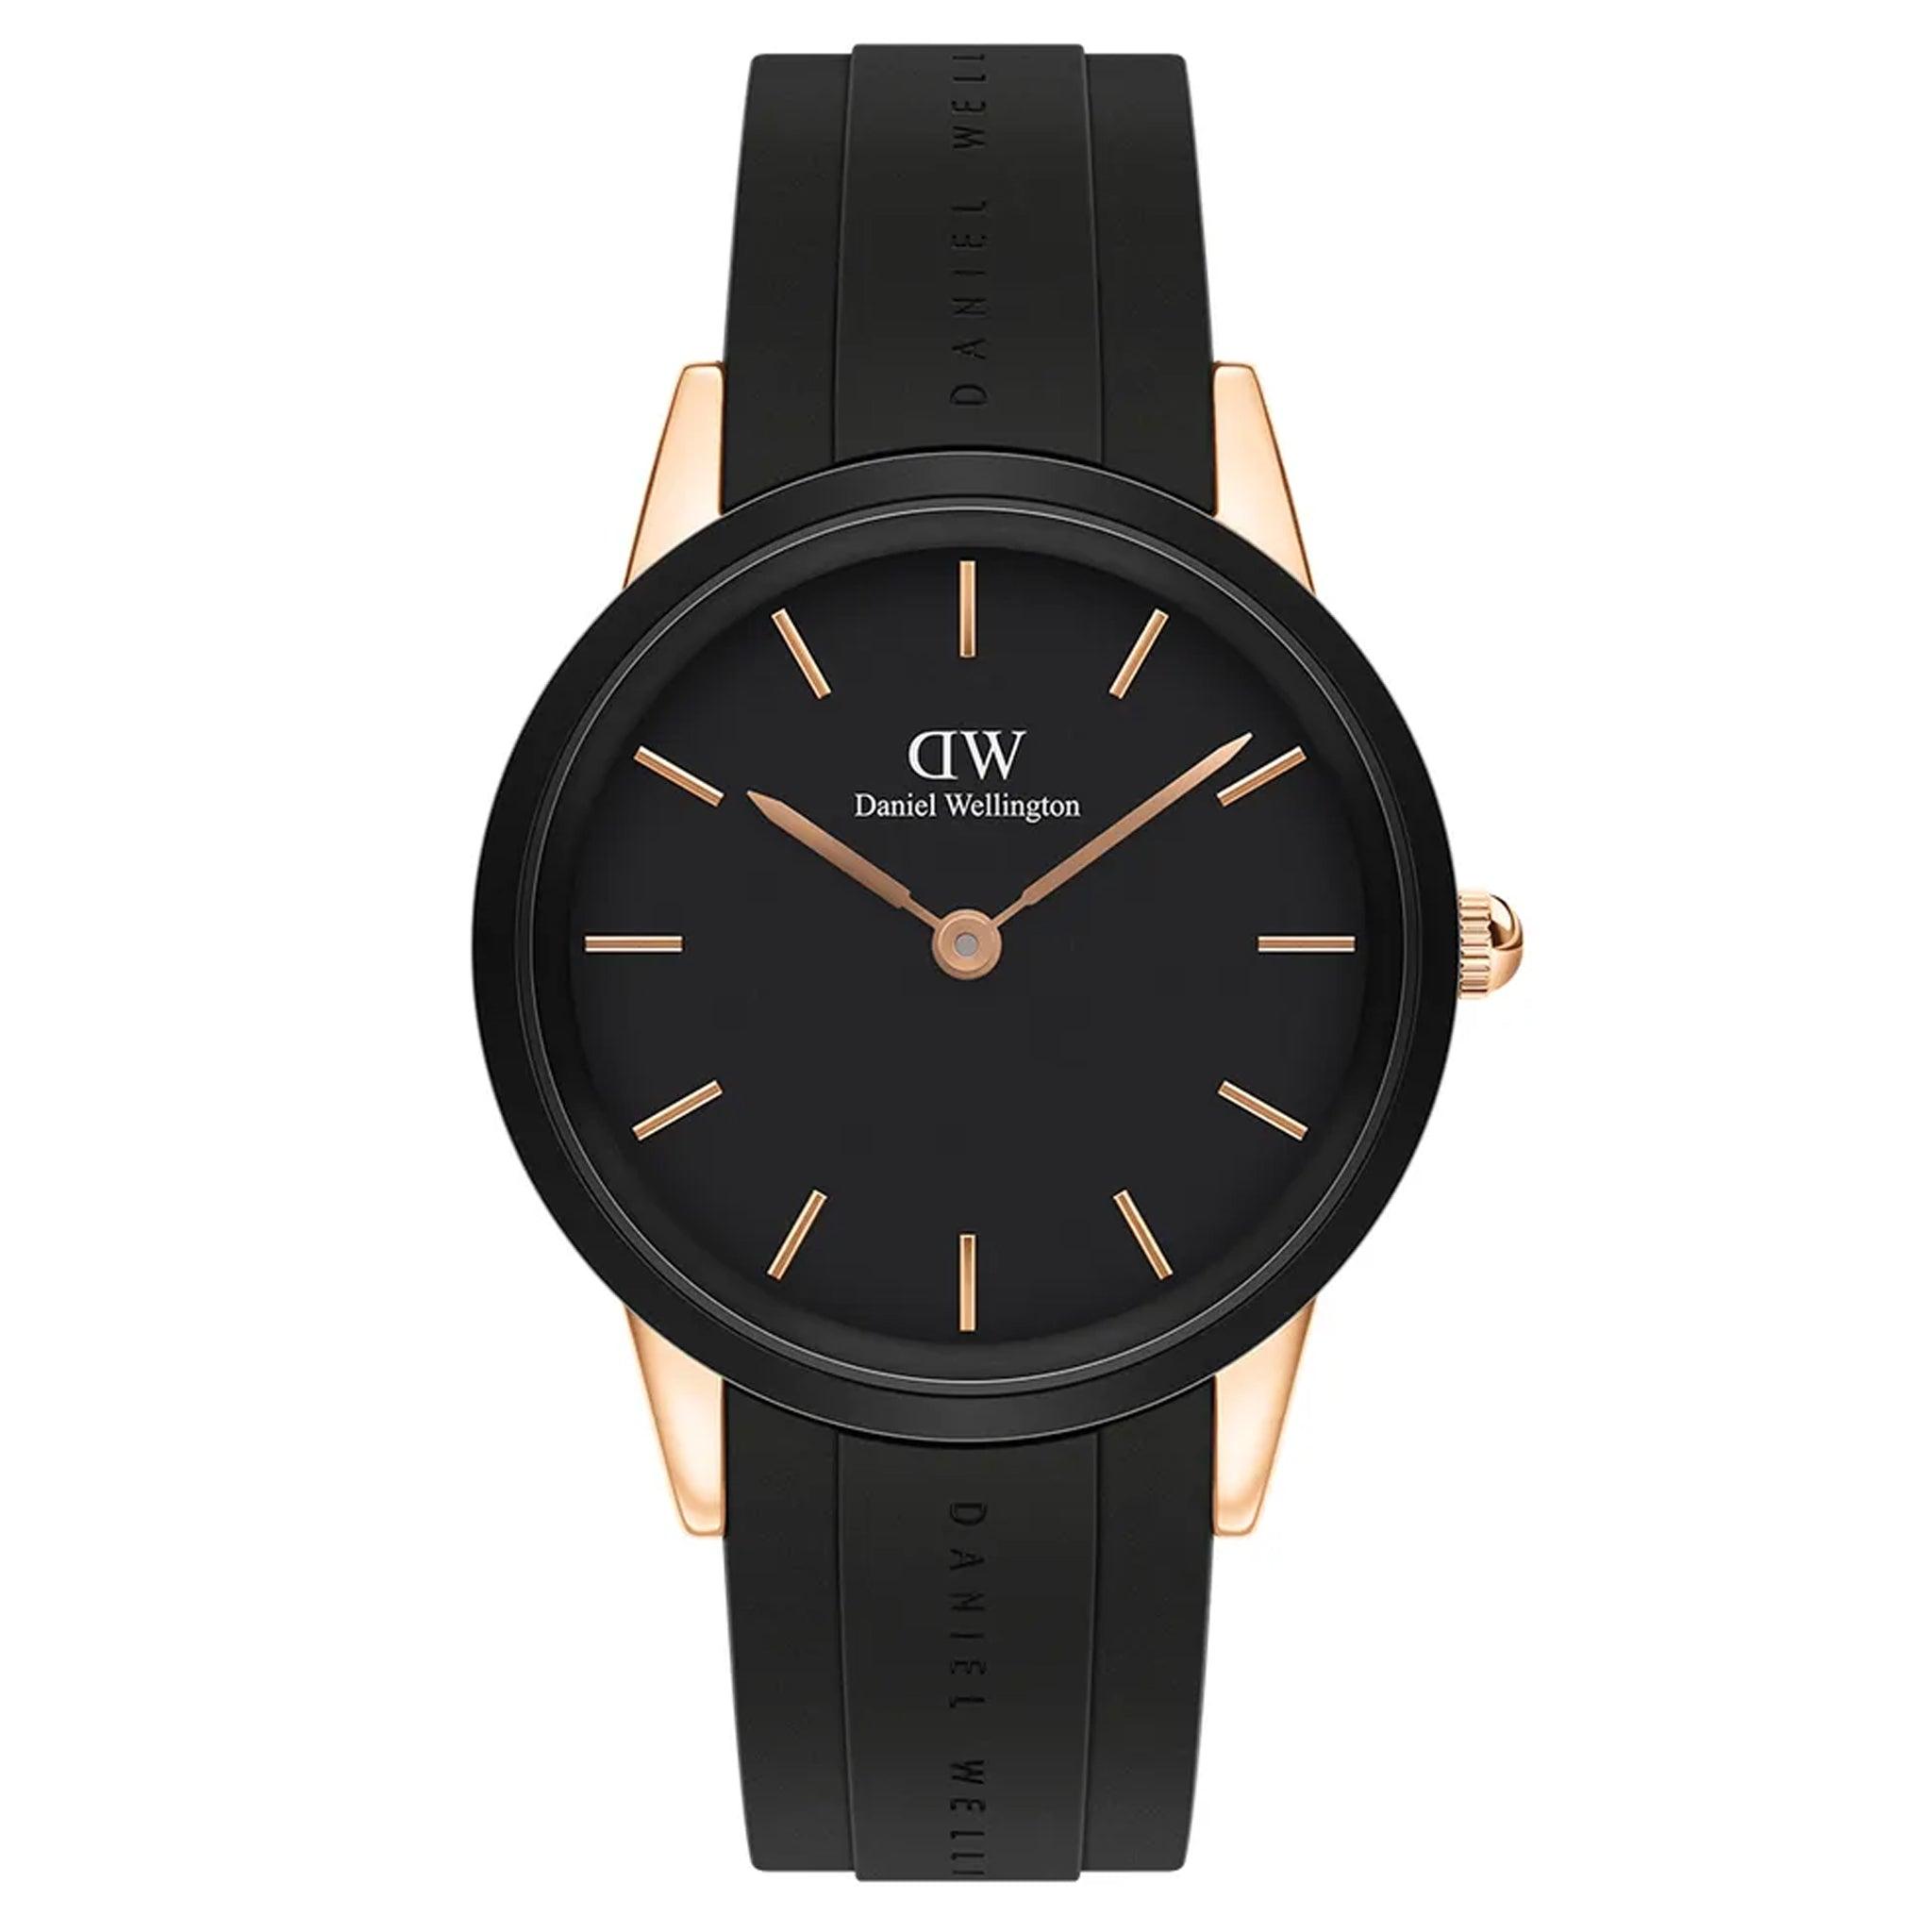 ساعة للرجال مطاط اسود دانيال ولينغتون Daniel Wellington Dw00100425 Iconic Motion Active Lifestyle Men's Watch In Black/Rose Gold